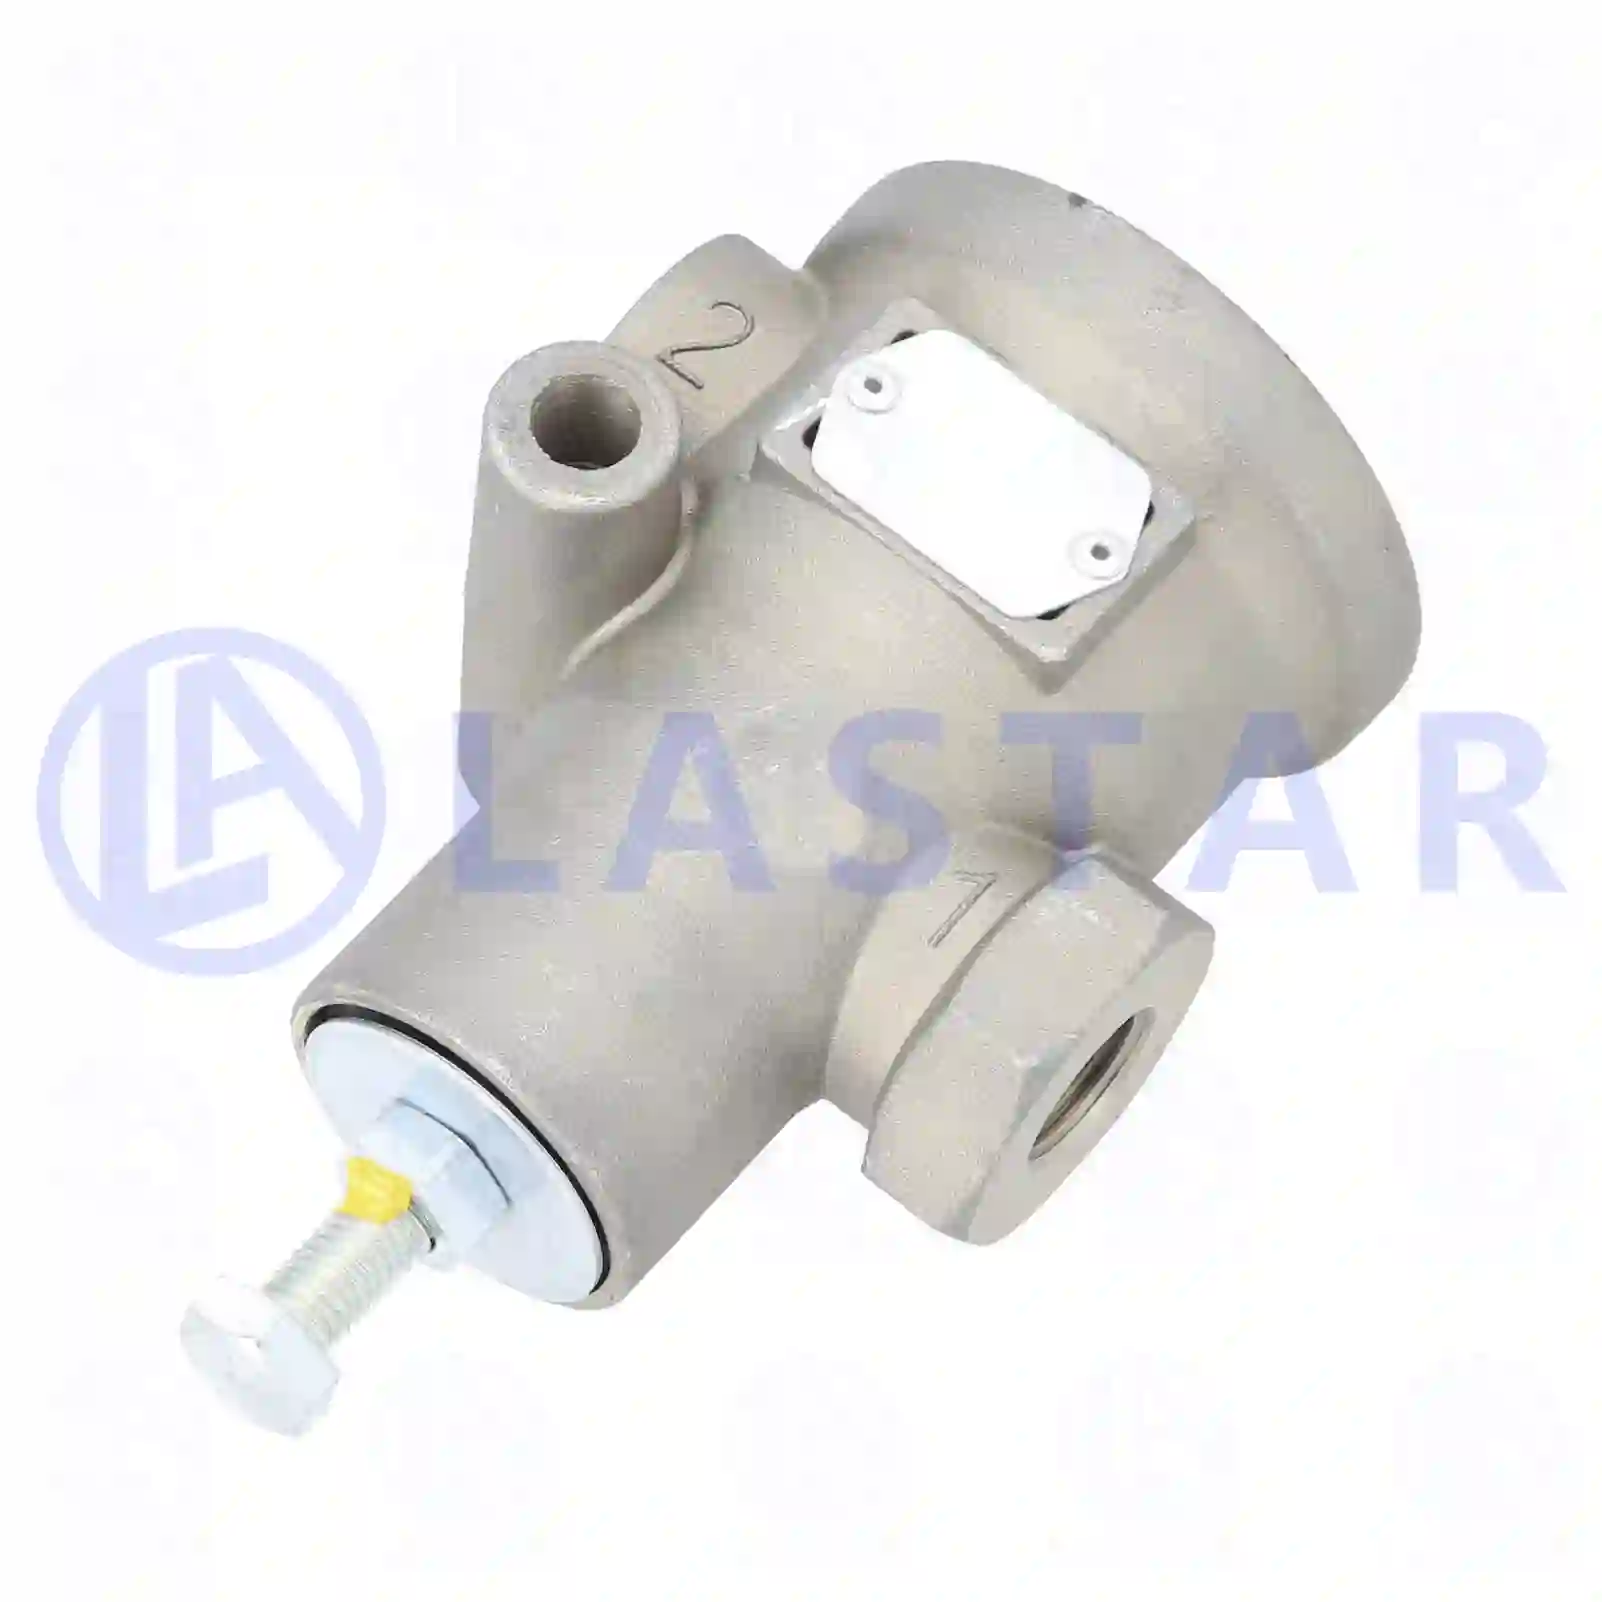 Gear Shift Housing Pressure limiting valve, la no: 77731833 ,  oem no:362425 Lastar Spare Part | Truck Spare Parts, Auotomotive Spare Parts